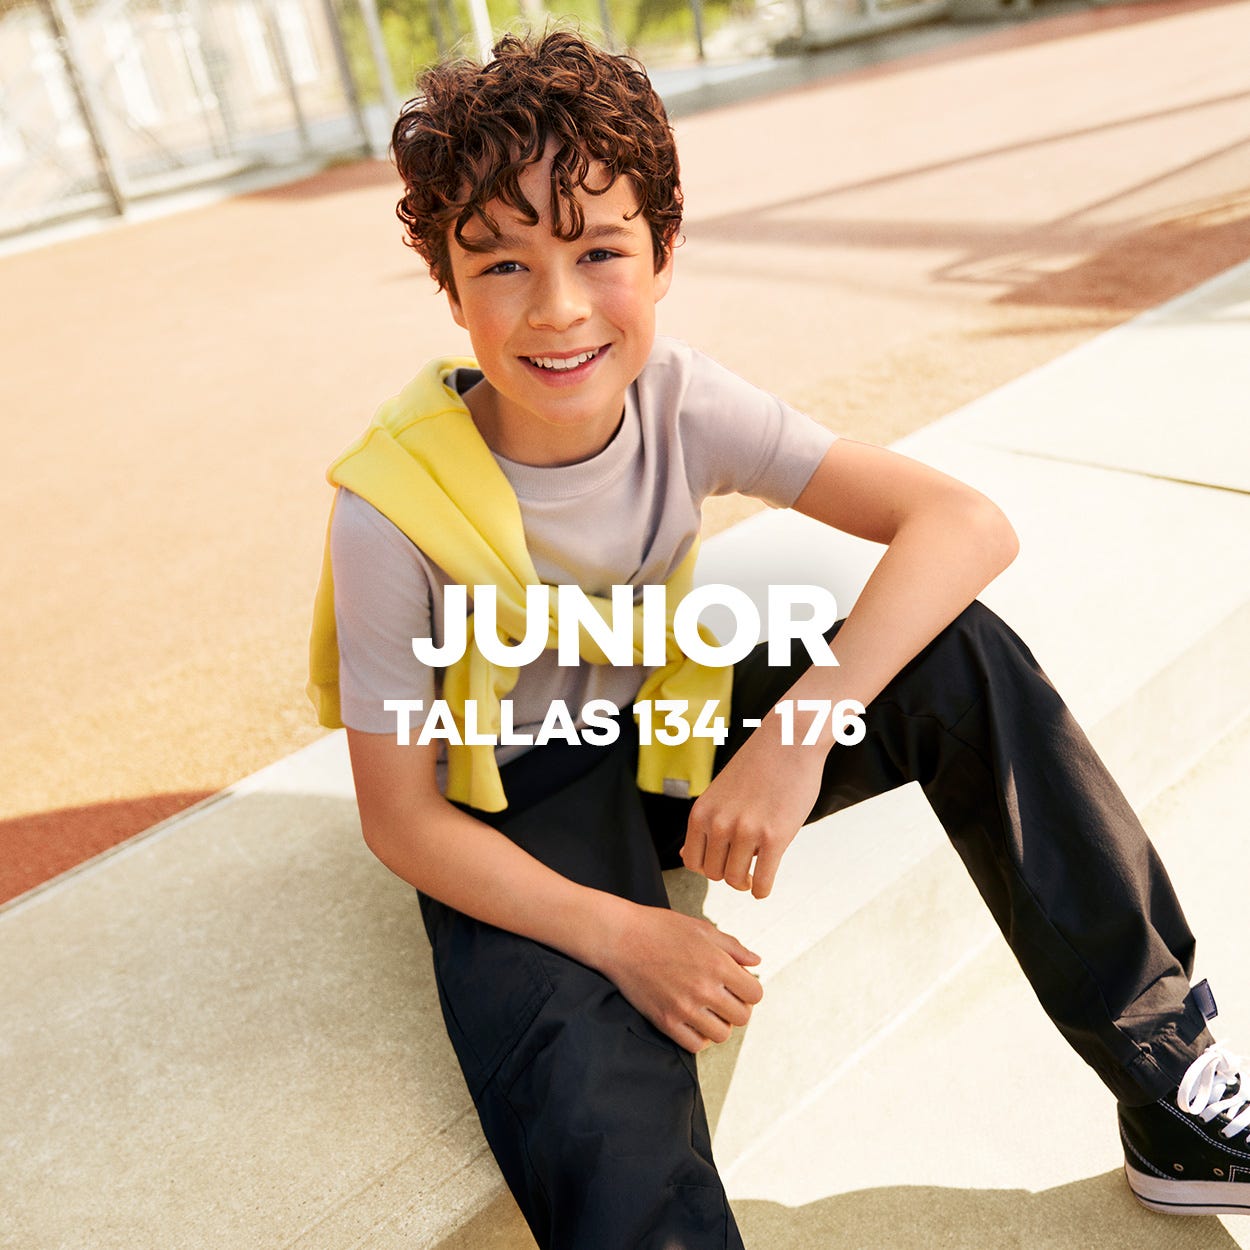 Jack & Jones: La marca de moda para hombre y niño que marca